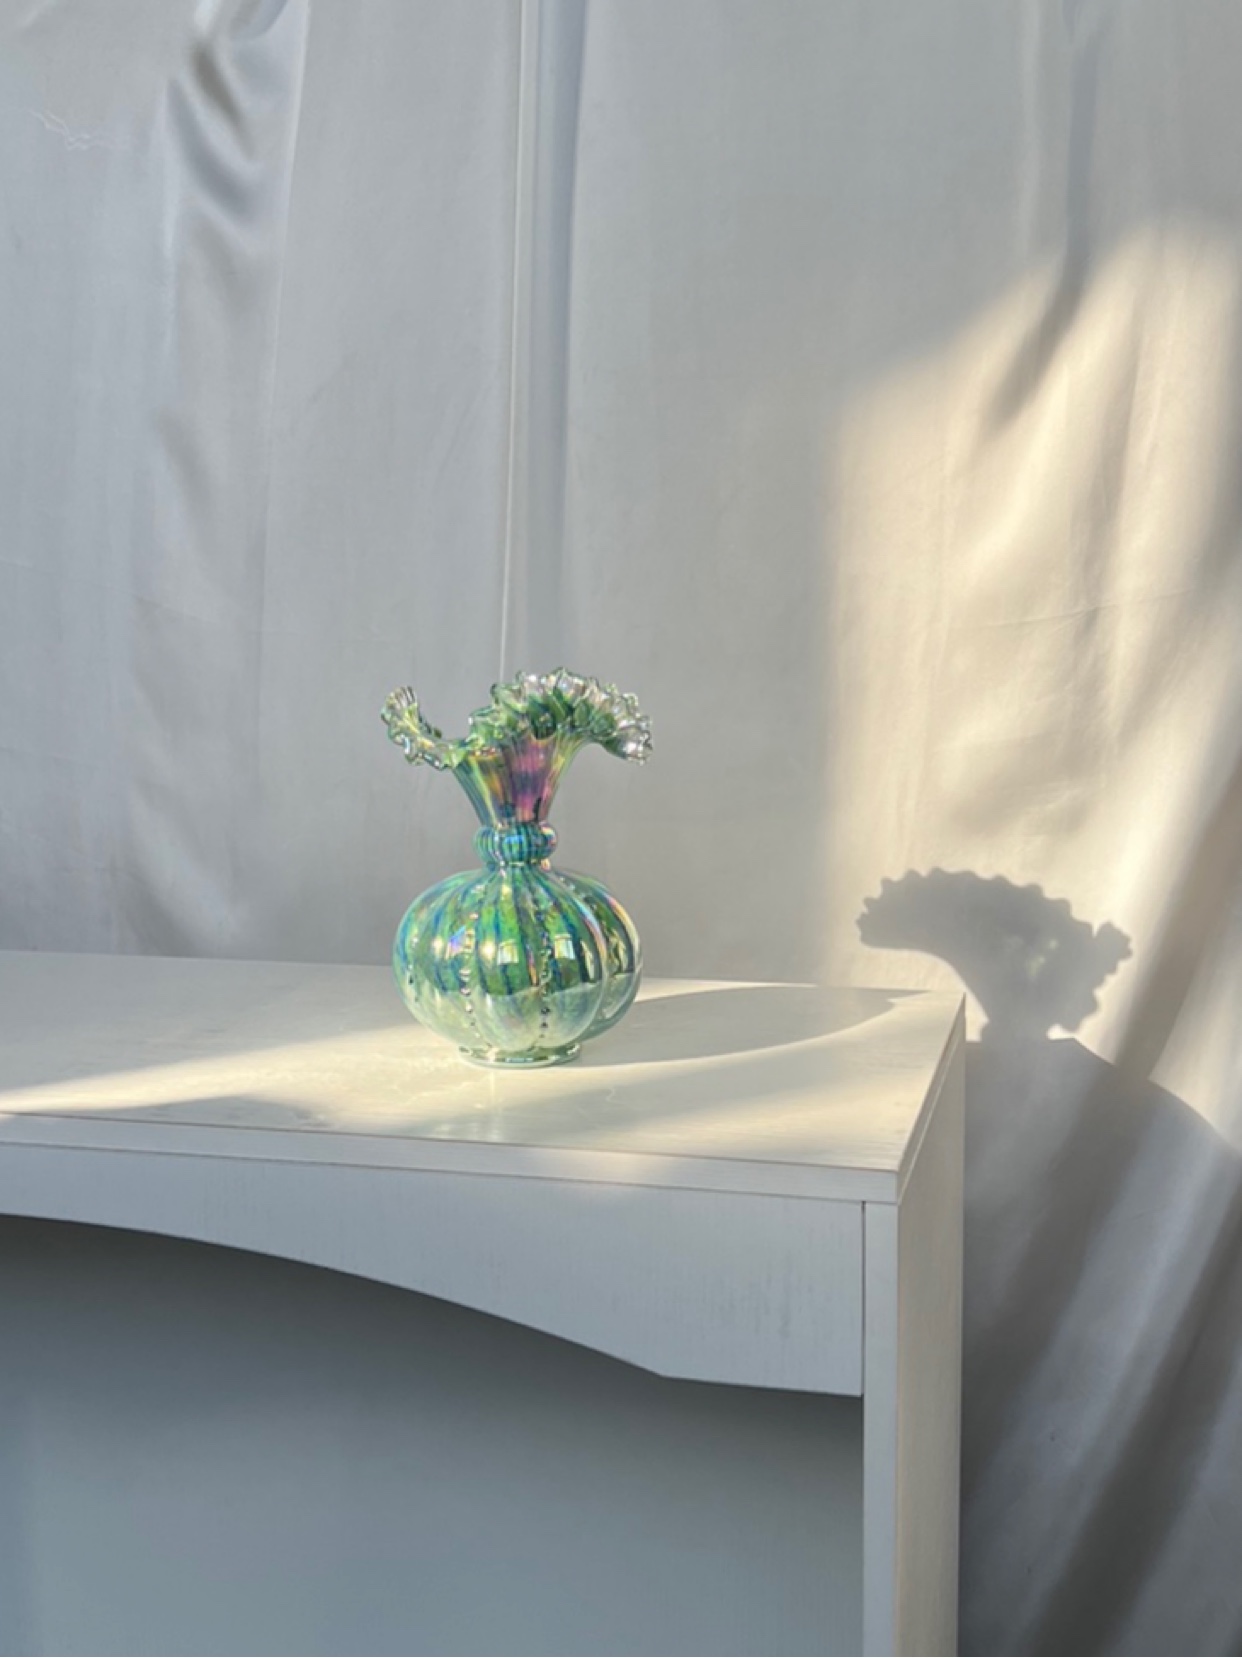 〖合集〗草绿色玻璃花瓶 手工琉璃花瓶 客厅卧室摆件家居好物分享 - 图2